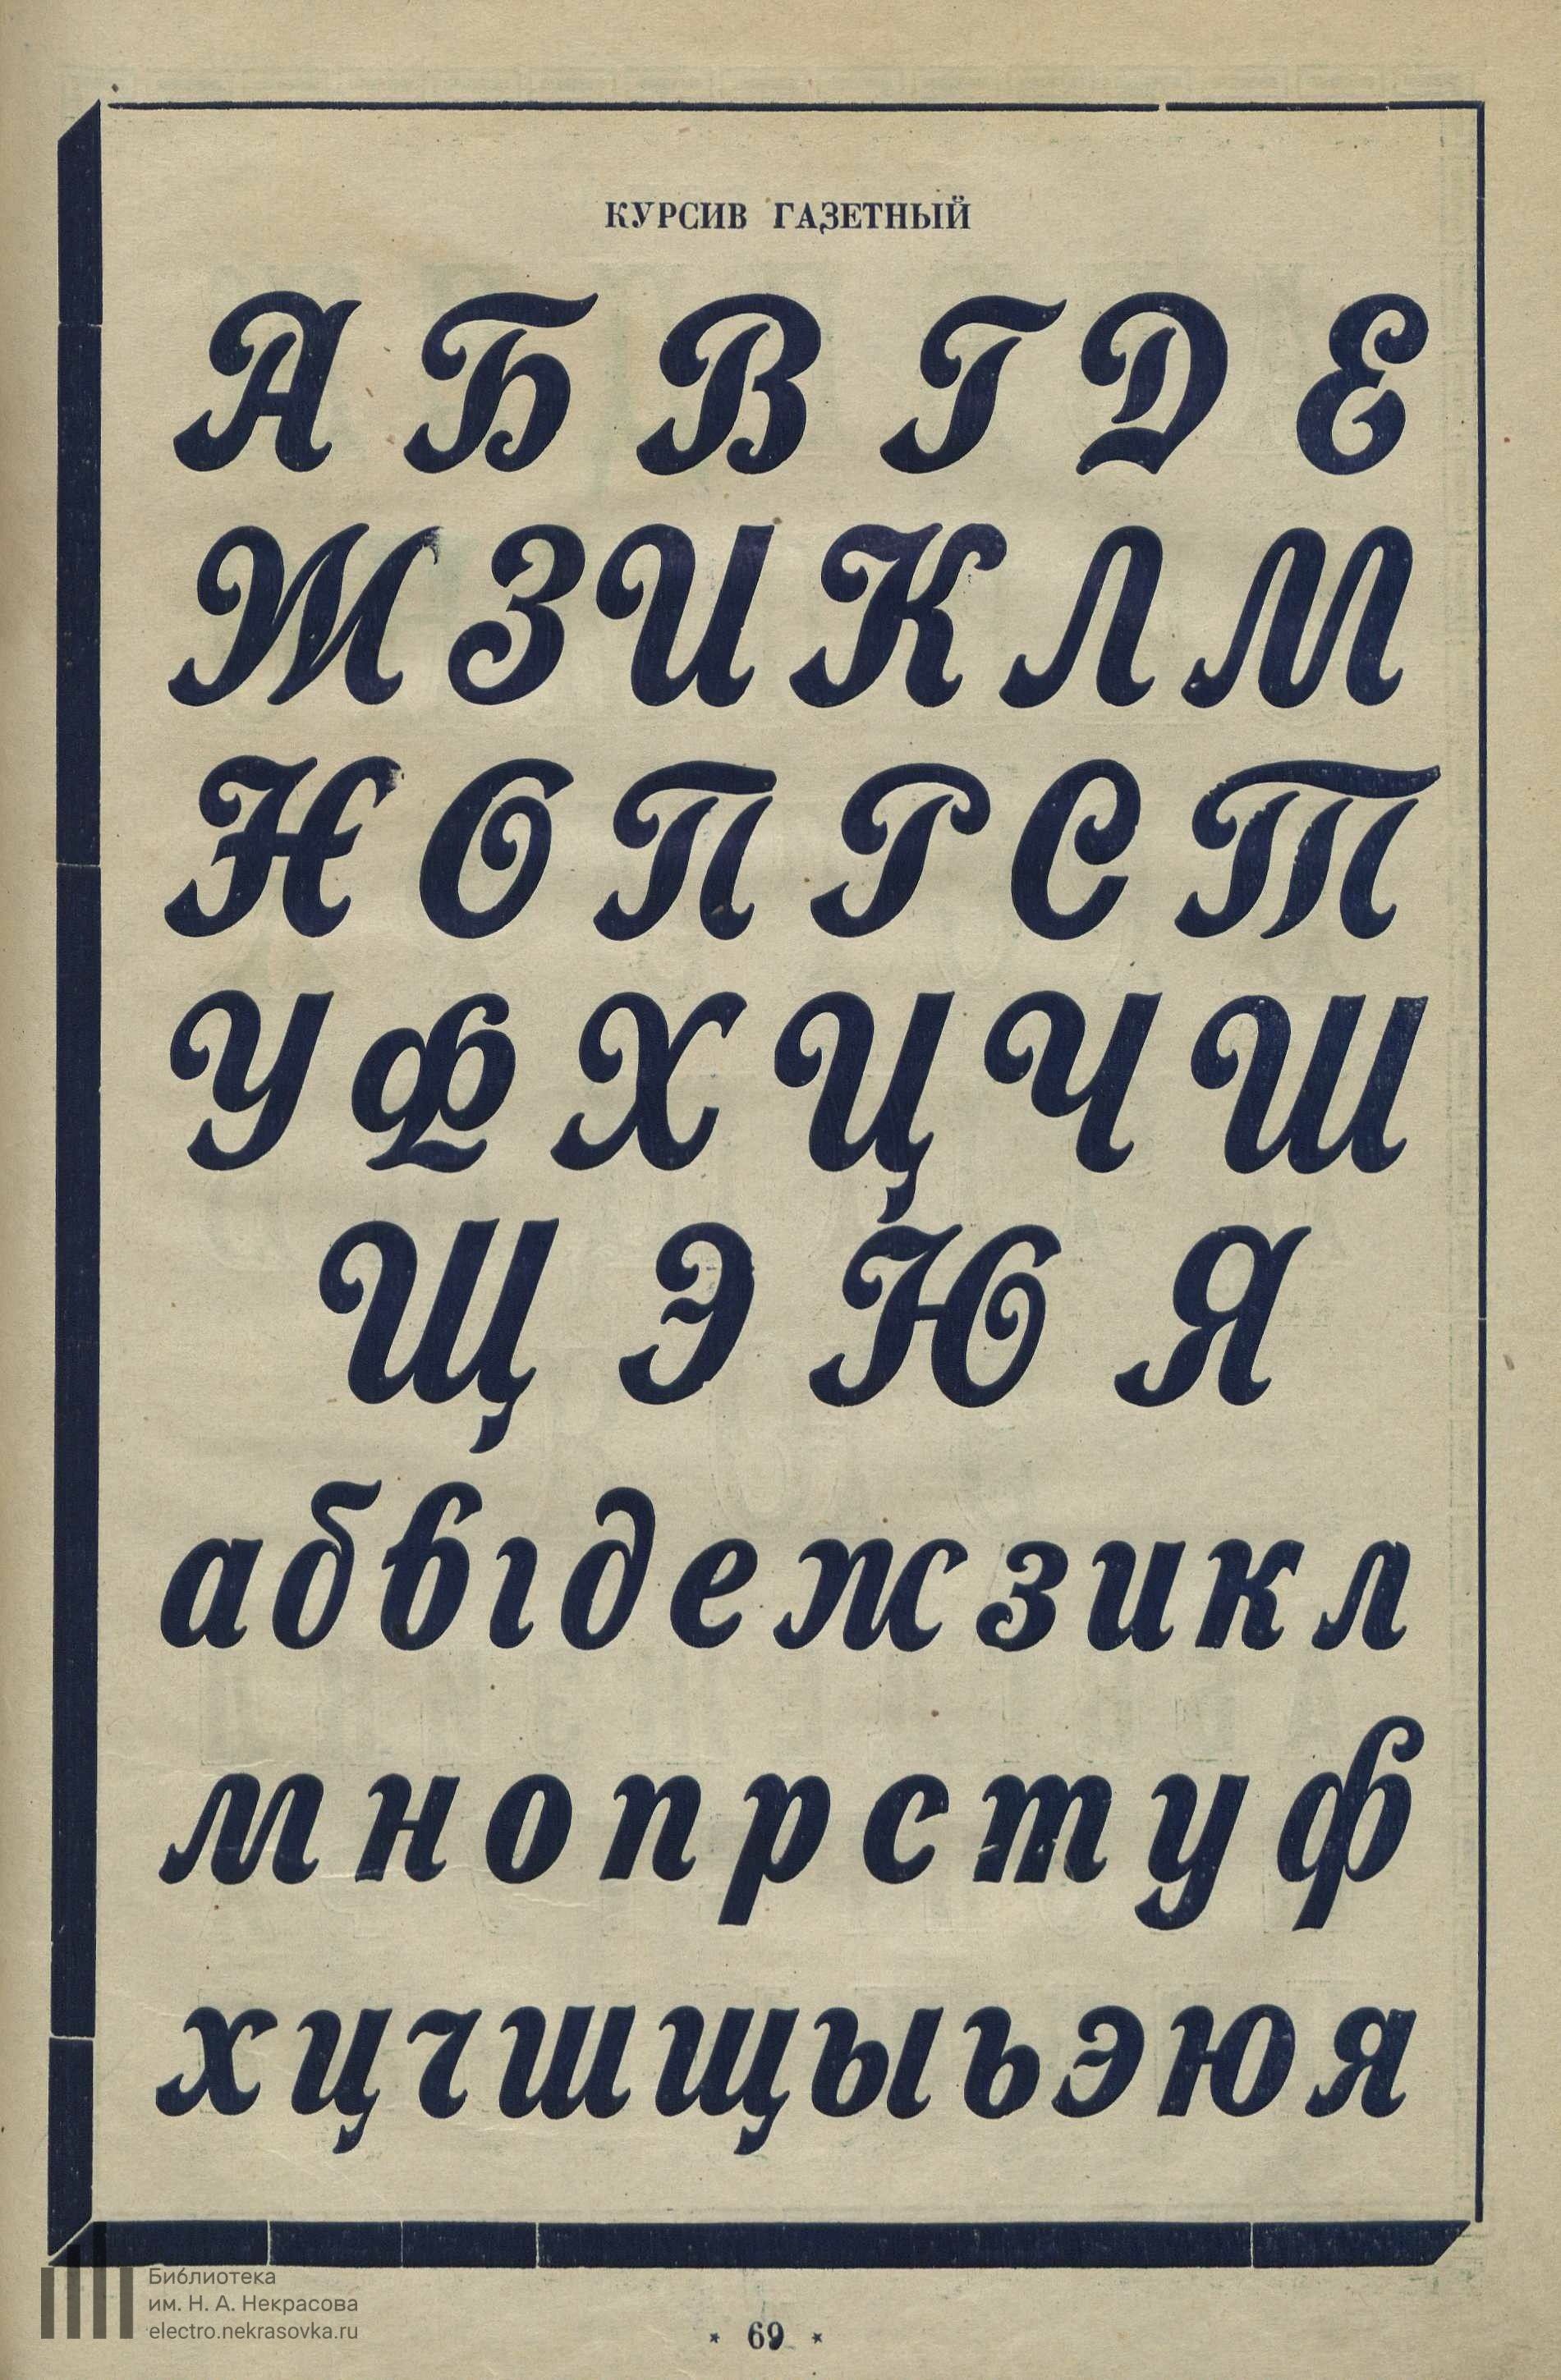 Художественные шрифты : Каллиграфия, рондо, готик, батард и 100 др. образцов / Оригинальные шрифты худ. Чехонина и Белухи. 1926